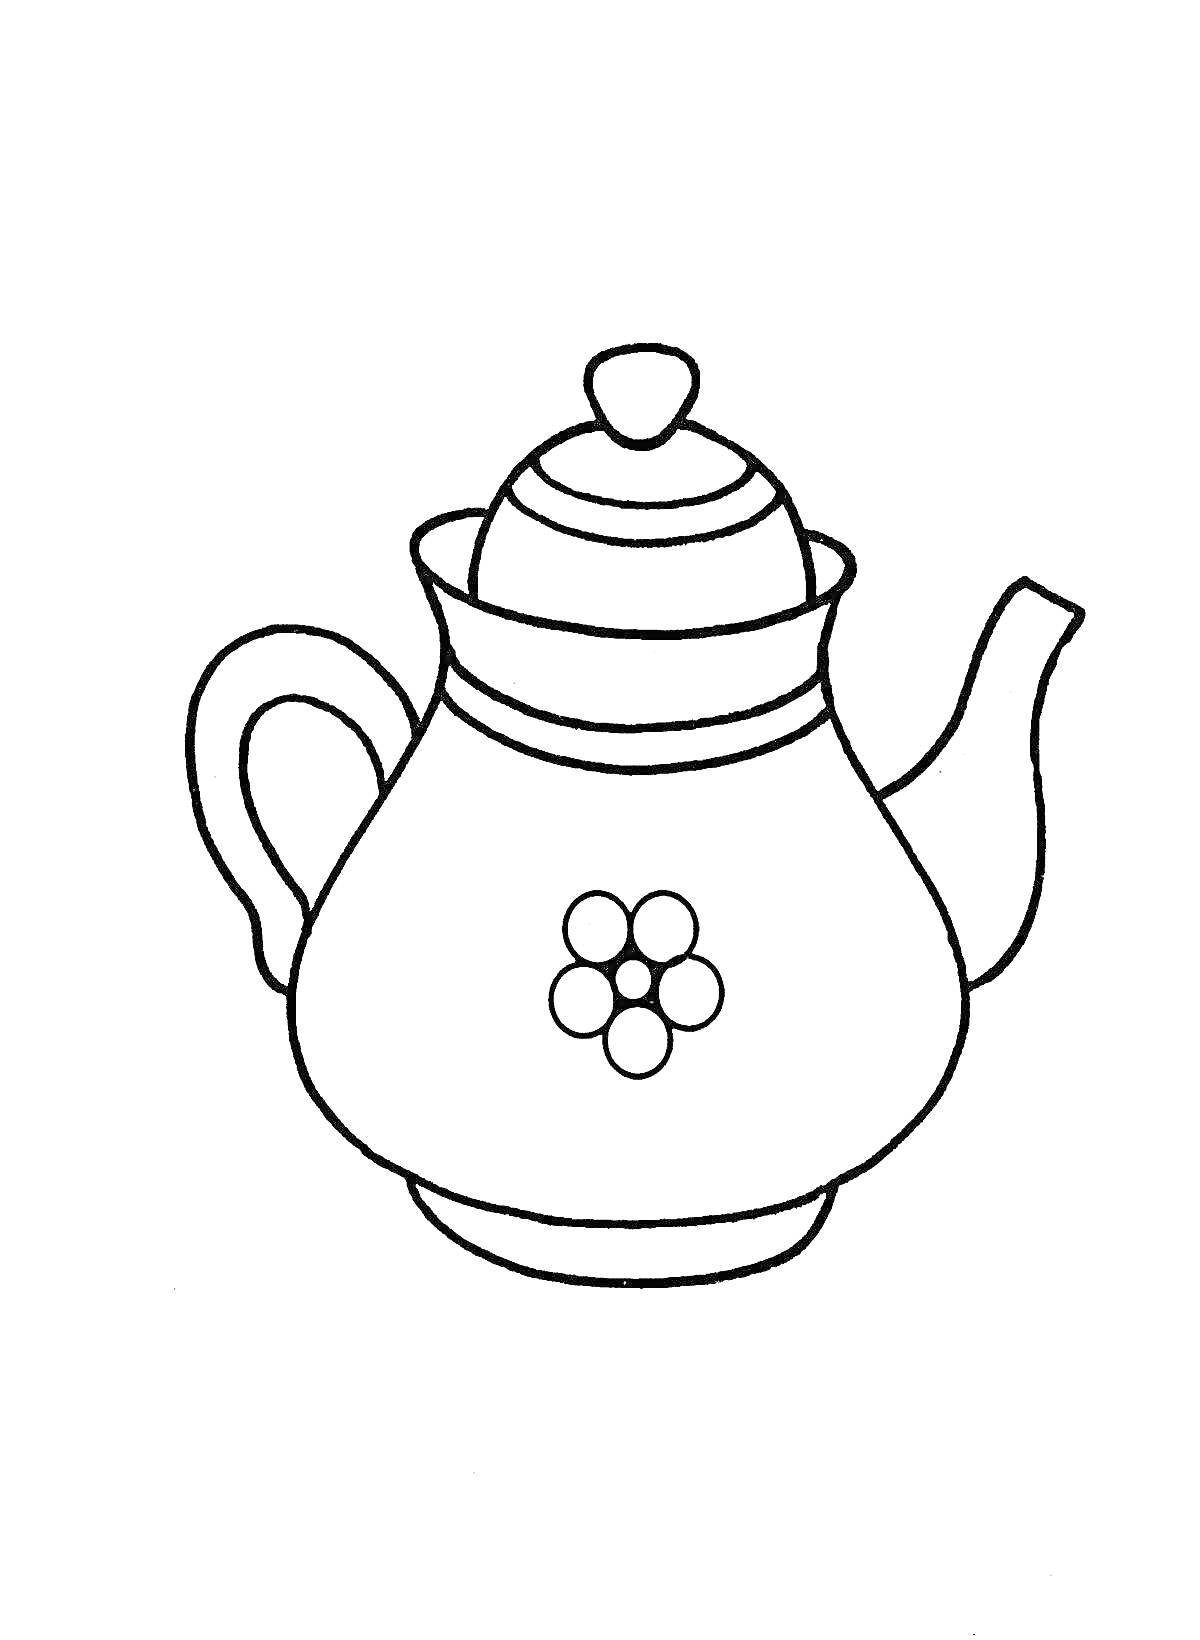 Раскраска Чайник с крышкой и узором в виде цветка